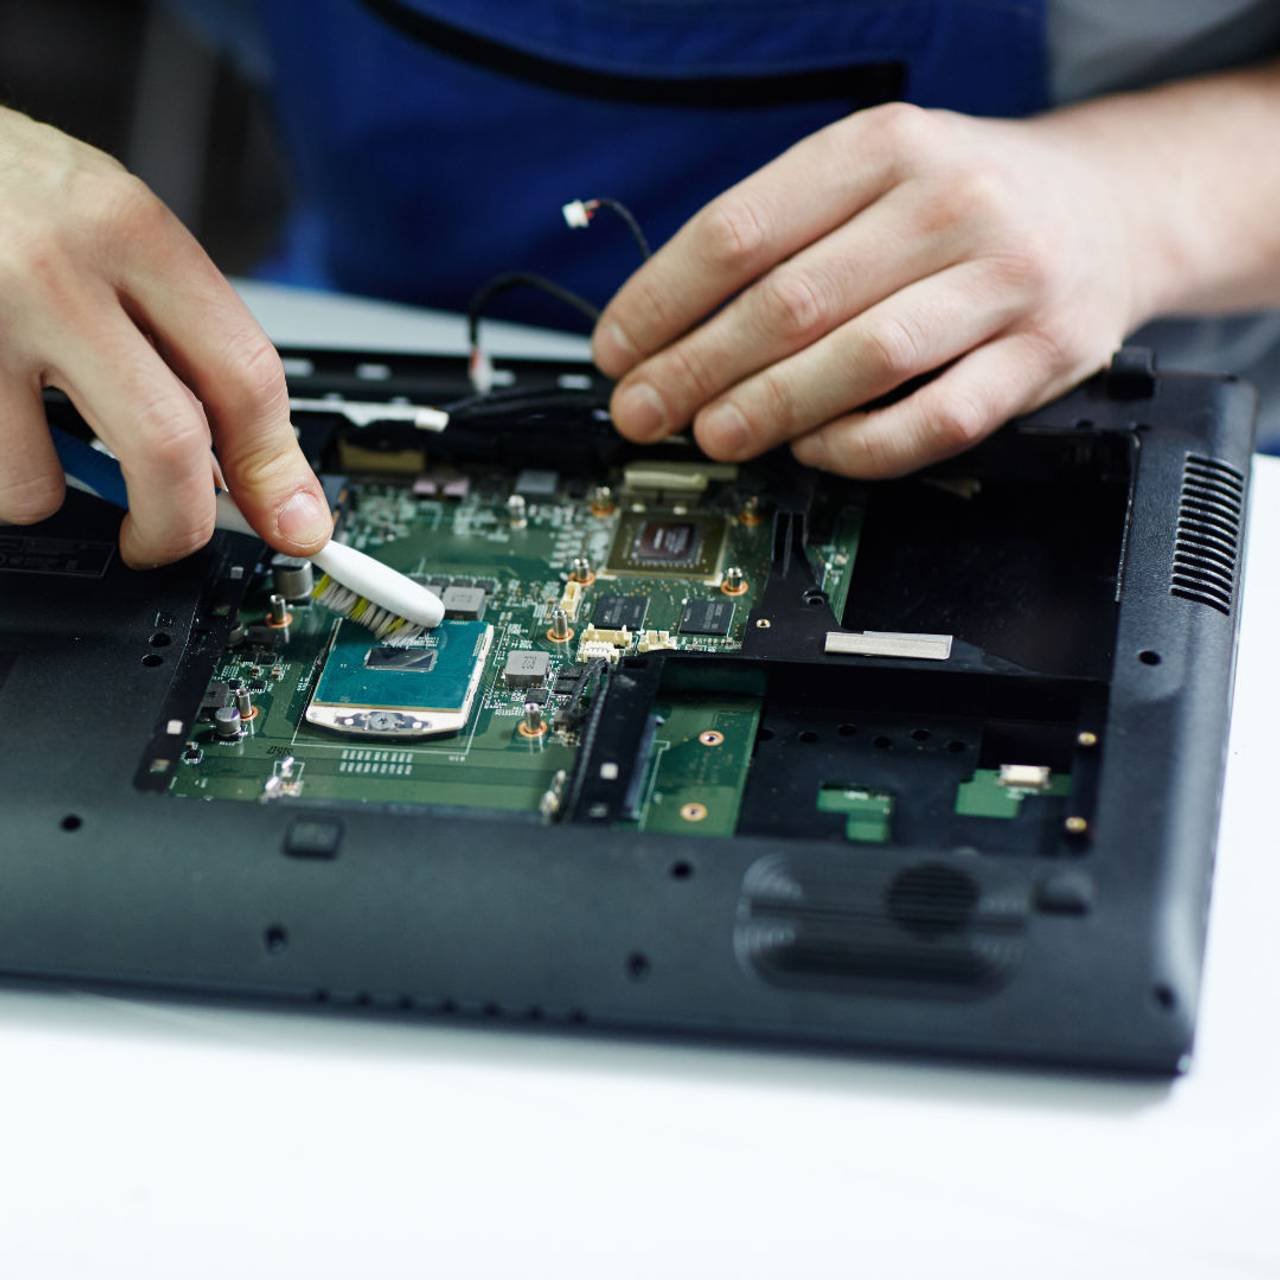 placa de circuito tecnico de compensacao do laptop desmontado para limpeza